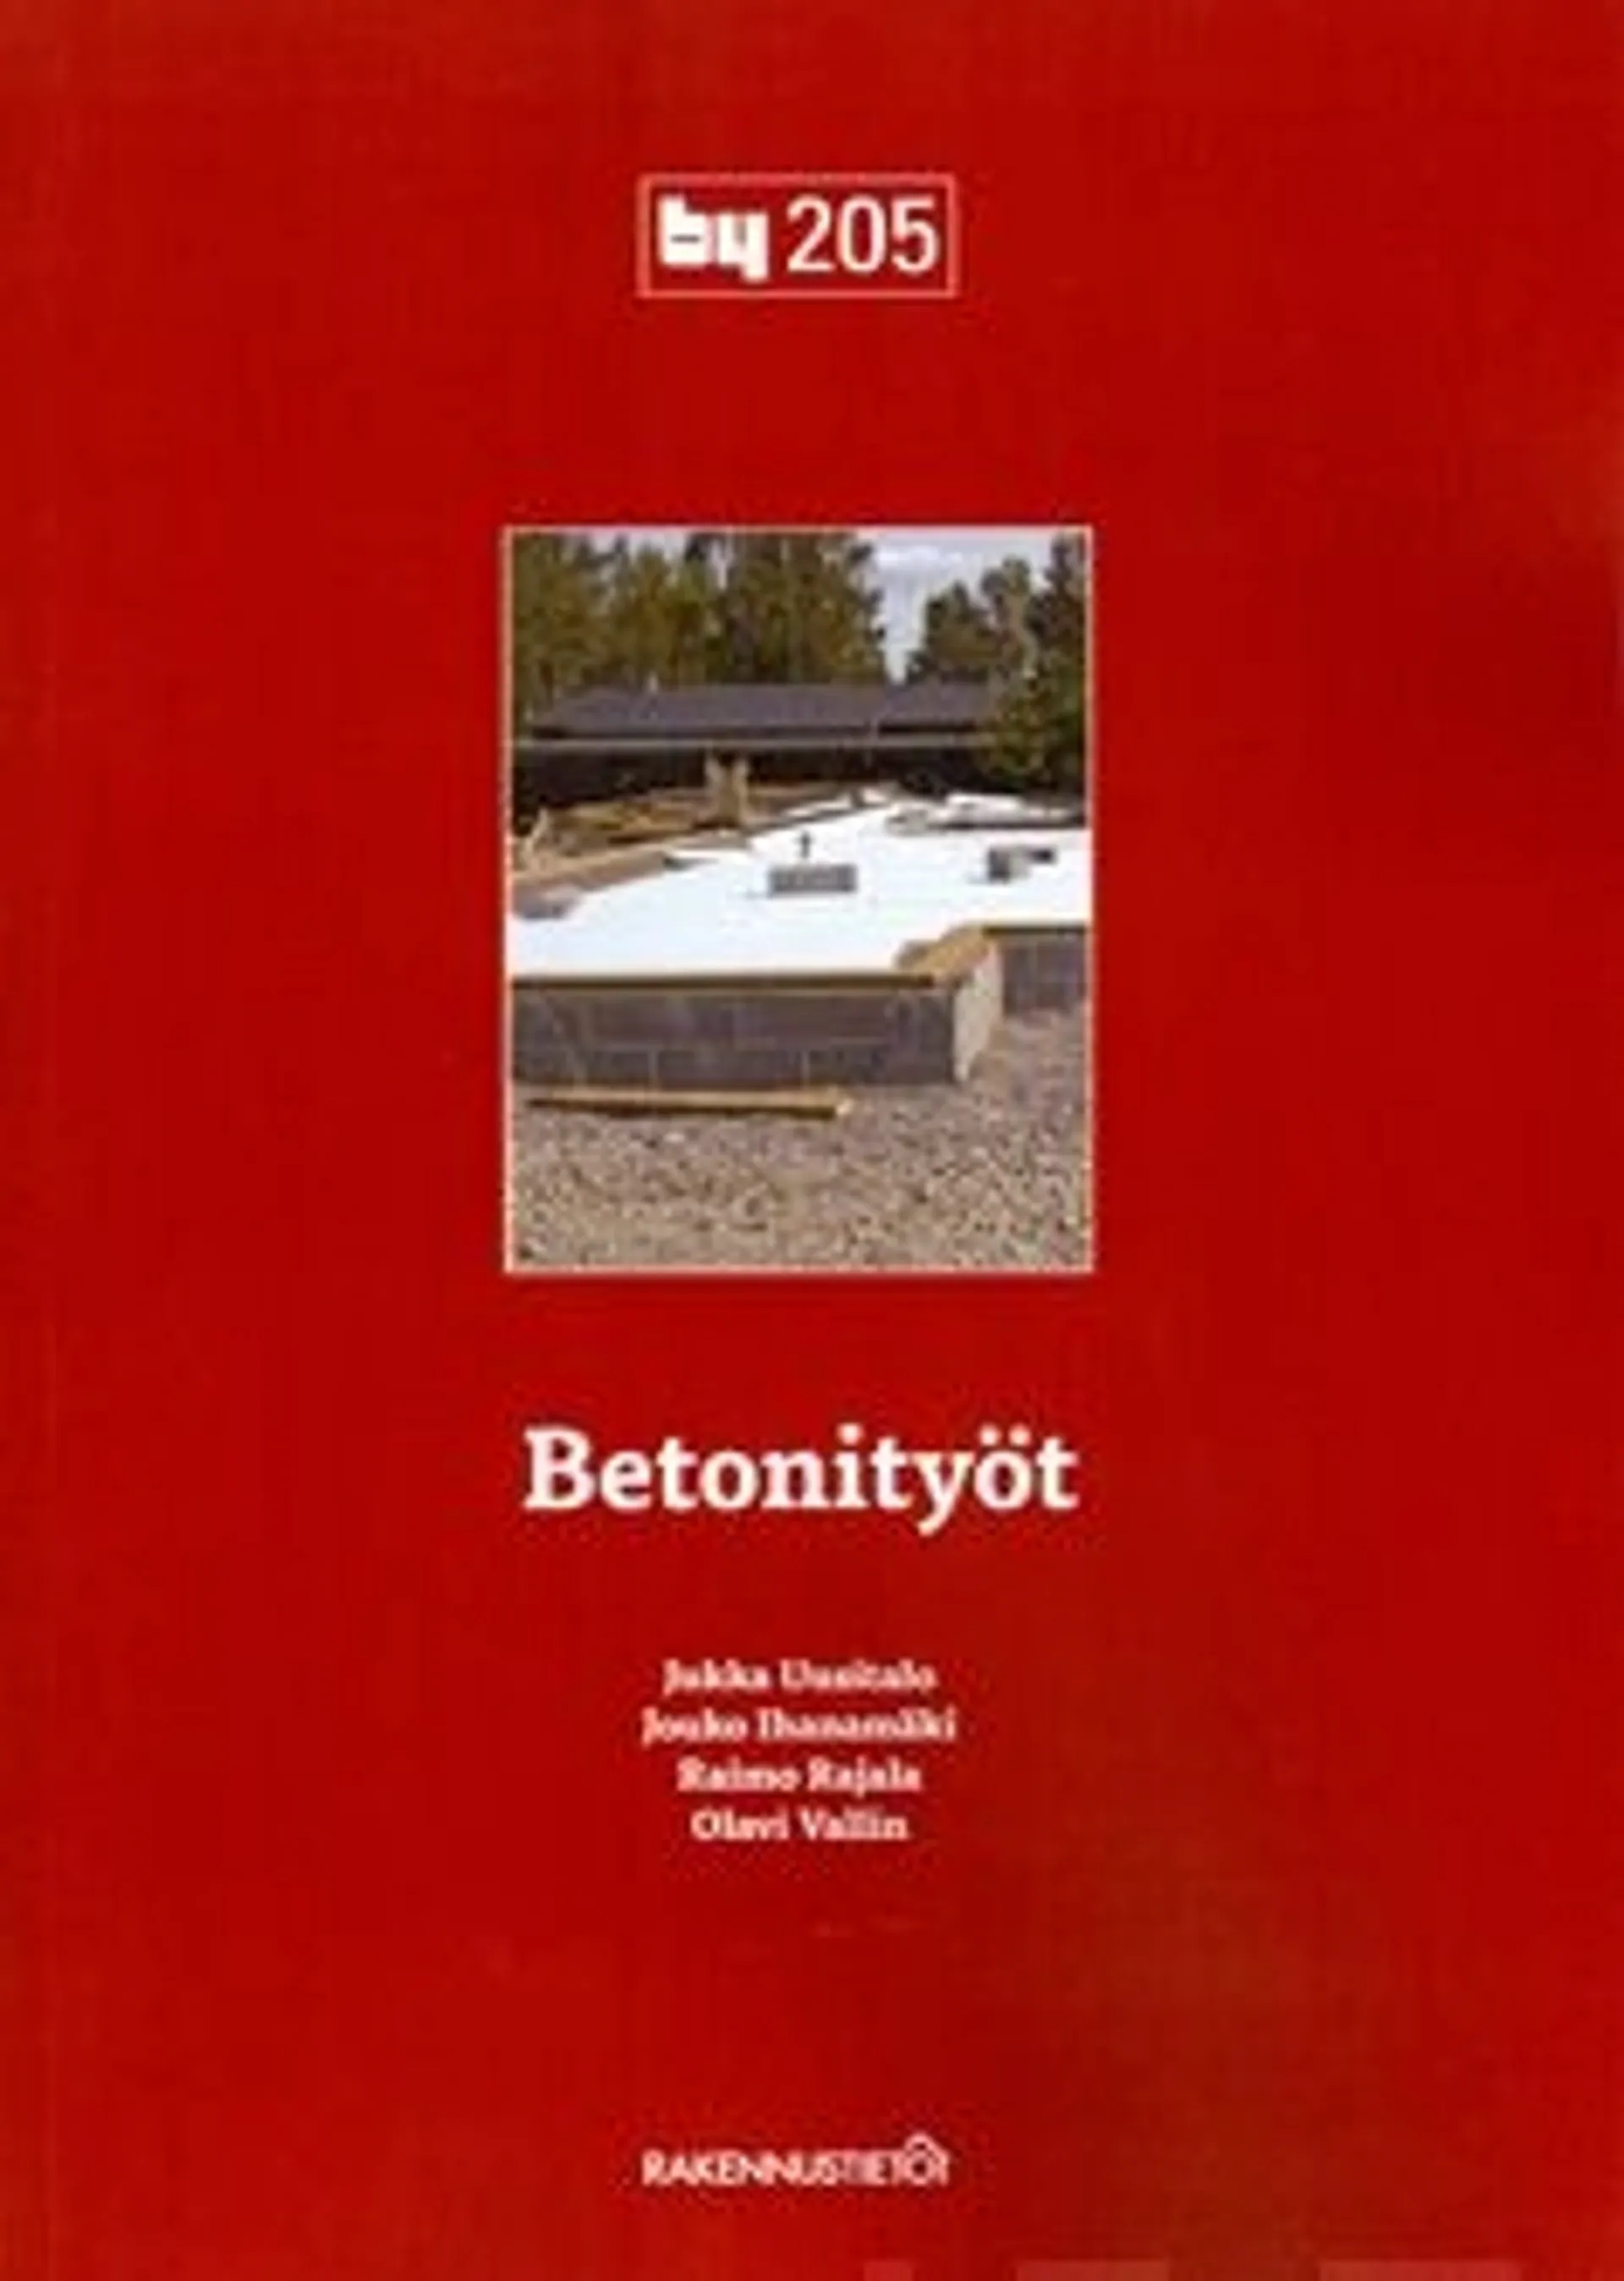 Uusitalo, by 205 Betonityöt